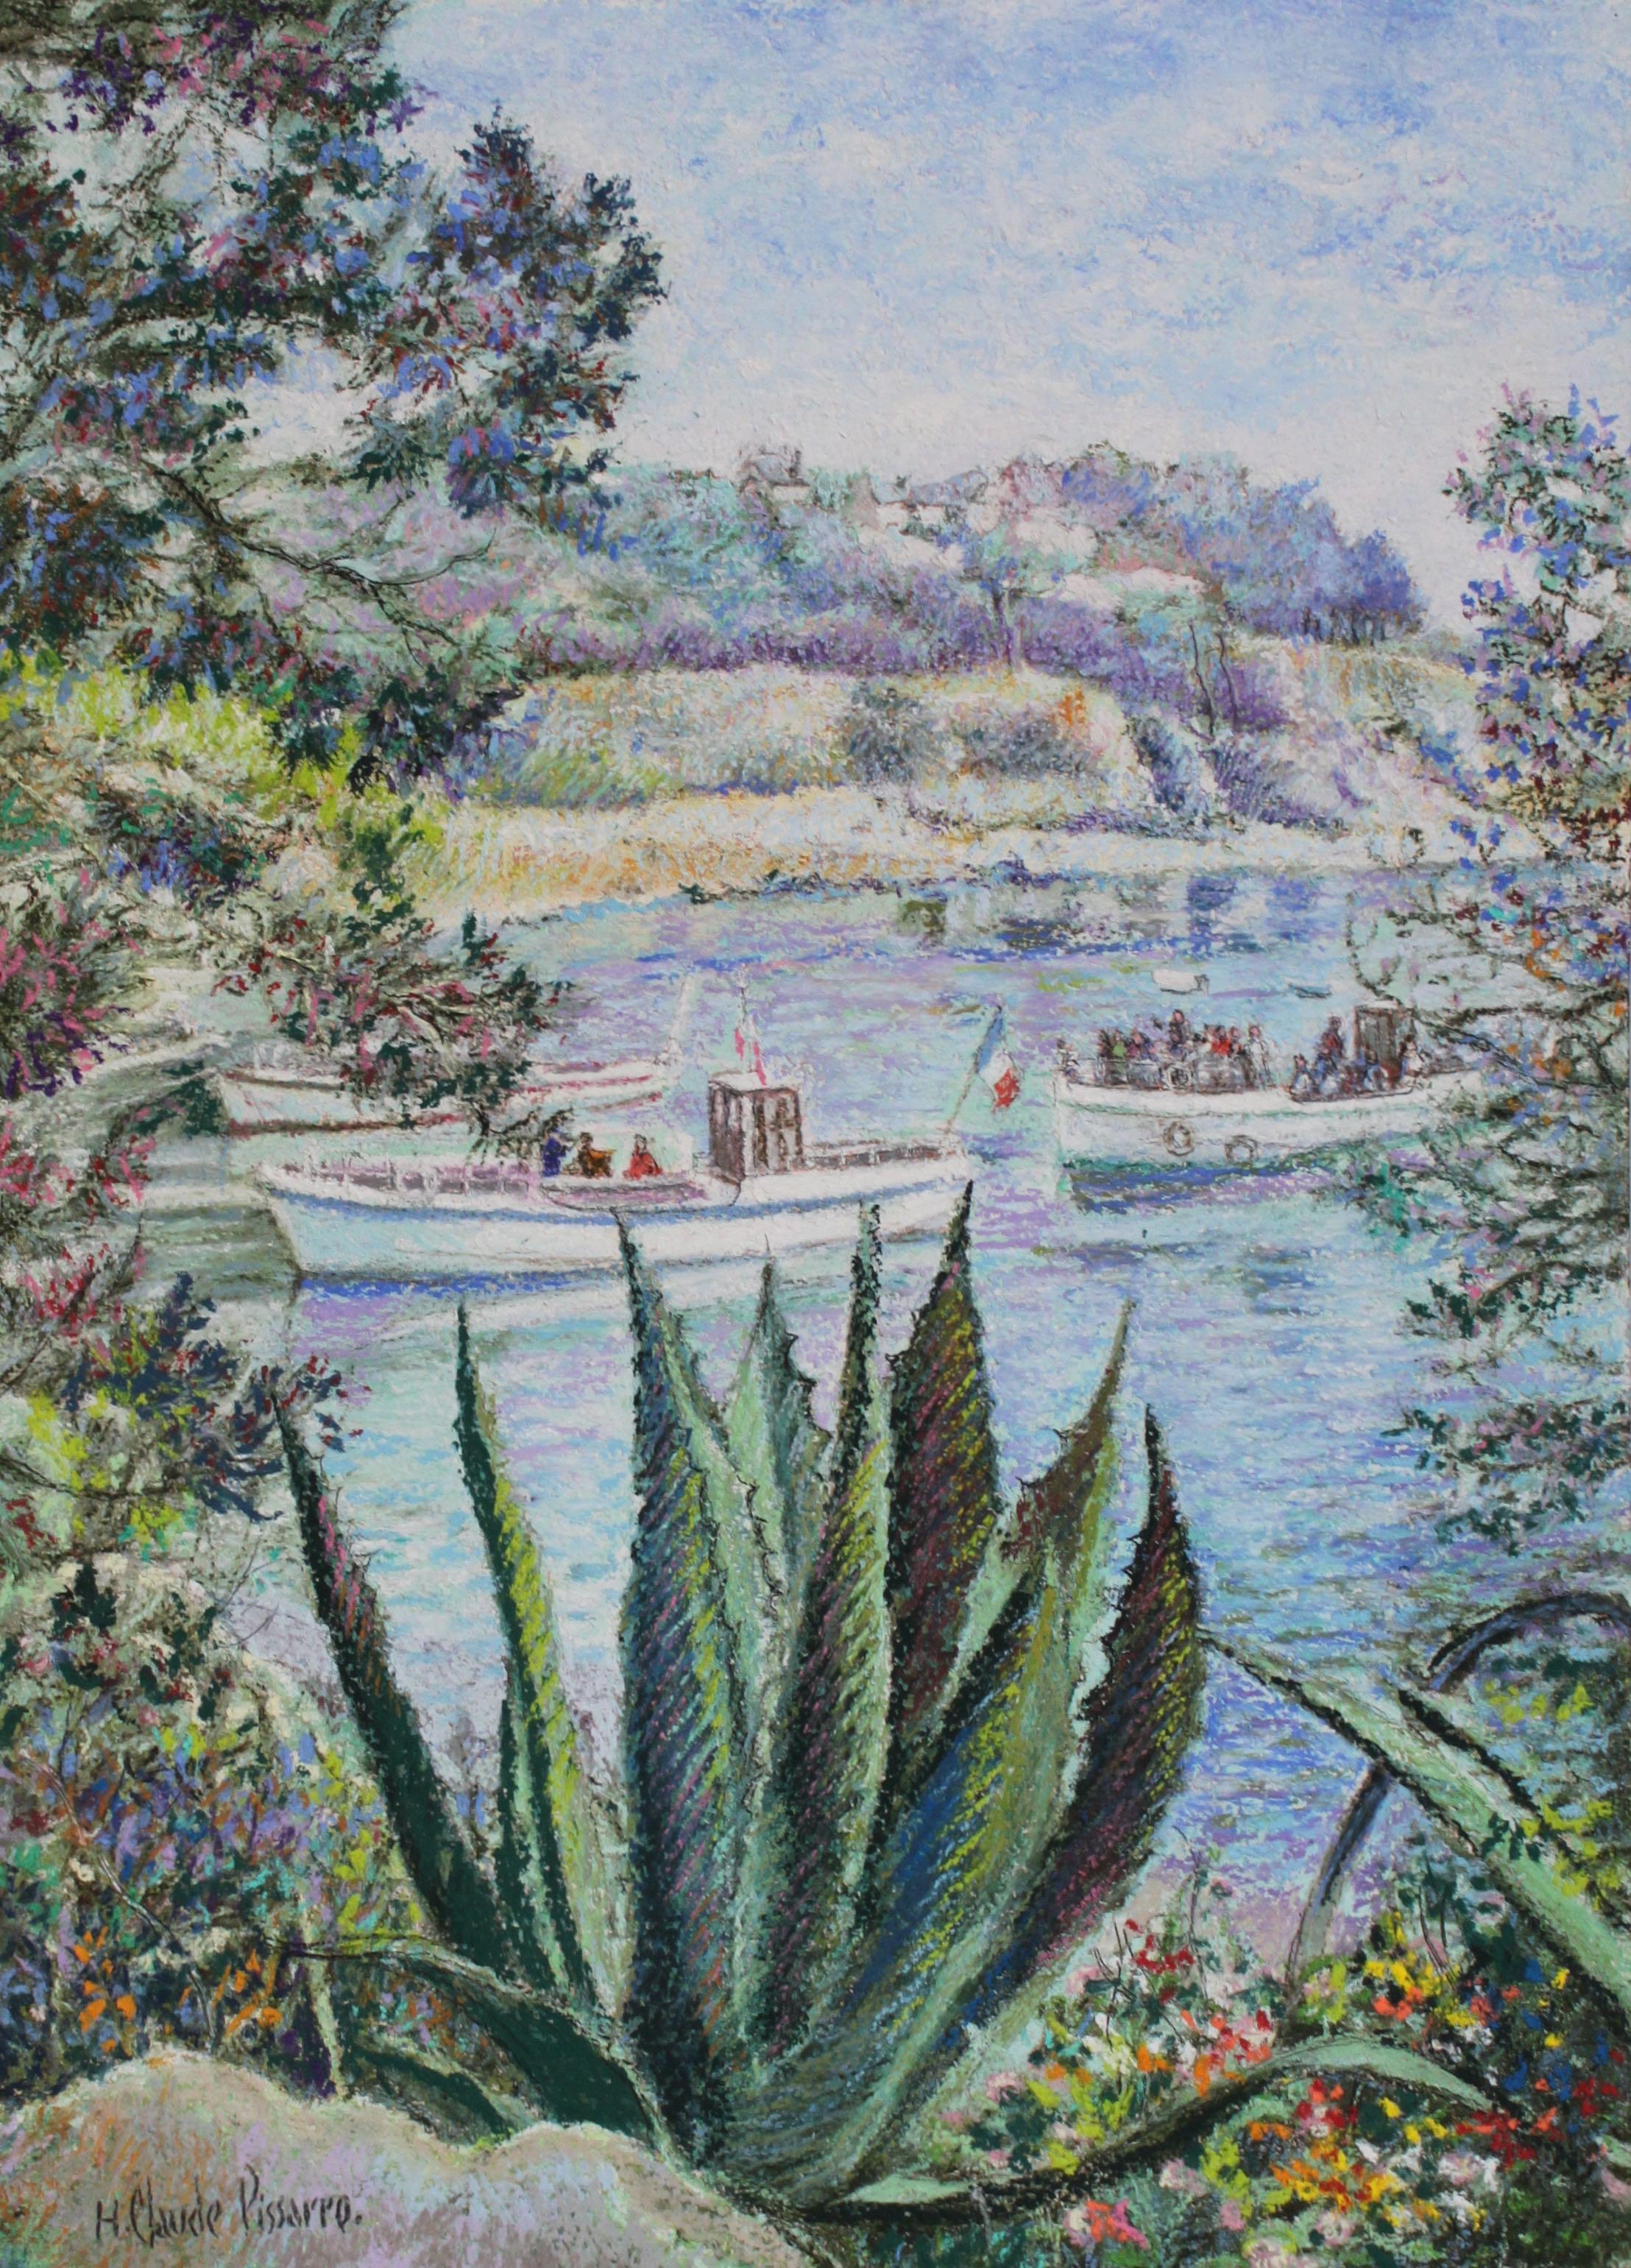 L'Aloés de la Calanque - Bréhat von H. Claude Pissarro - Landschaftsmalerei